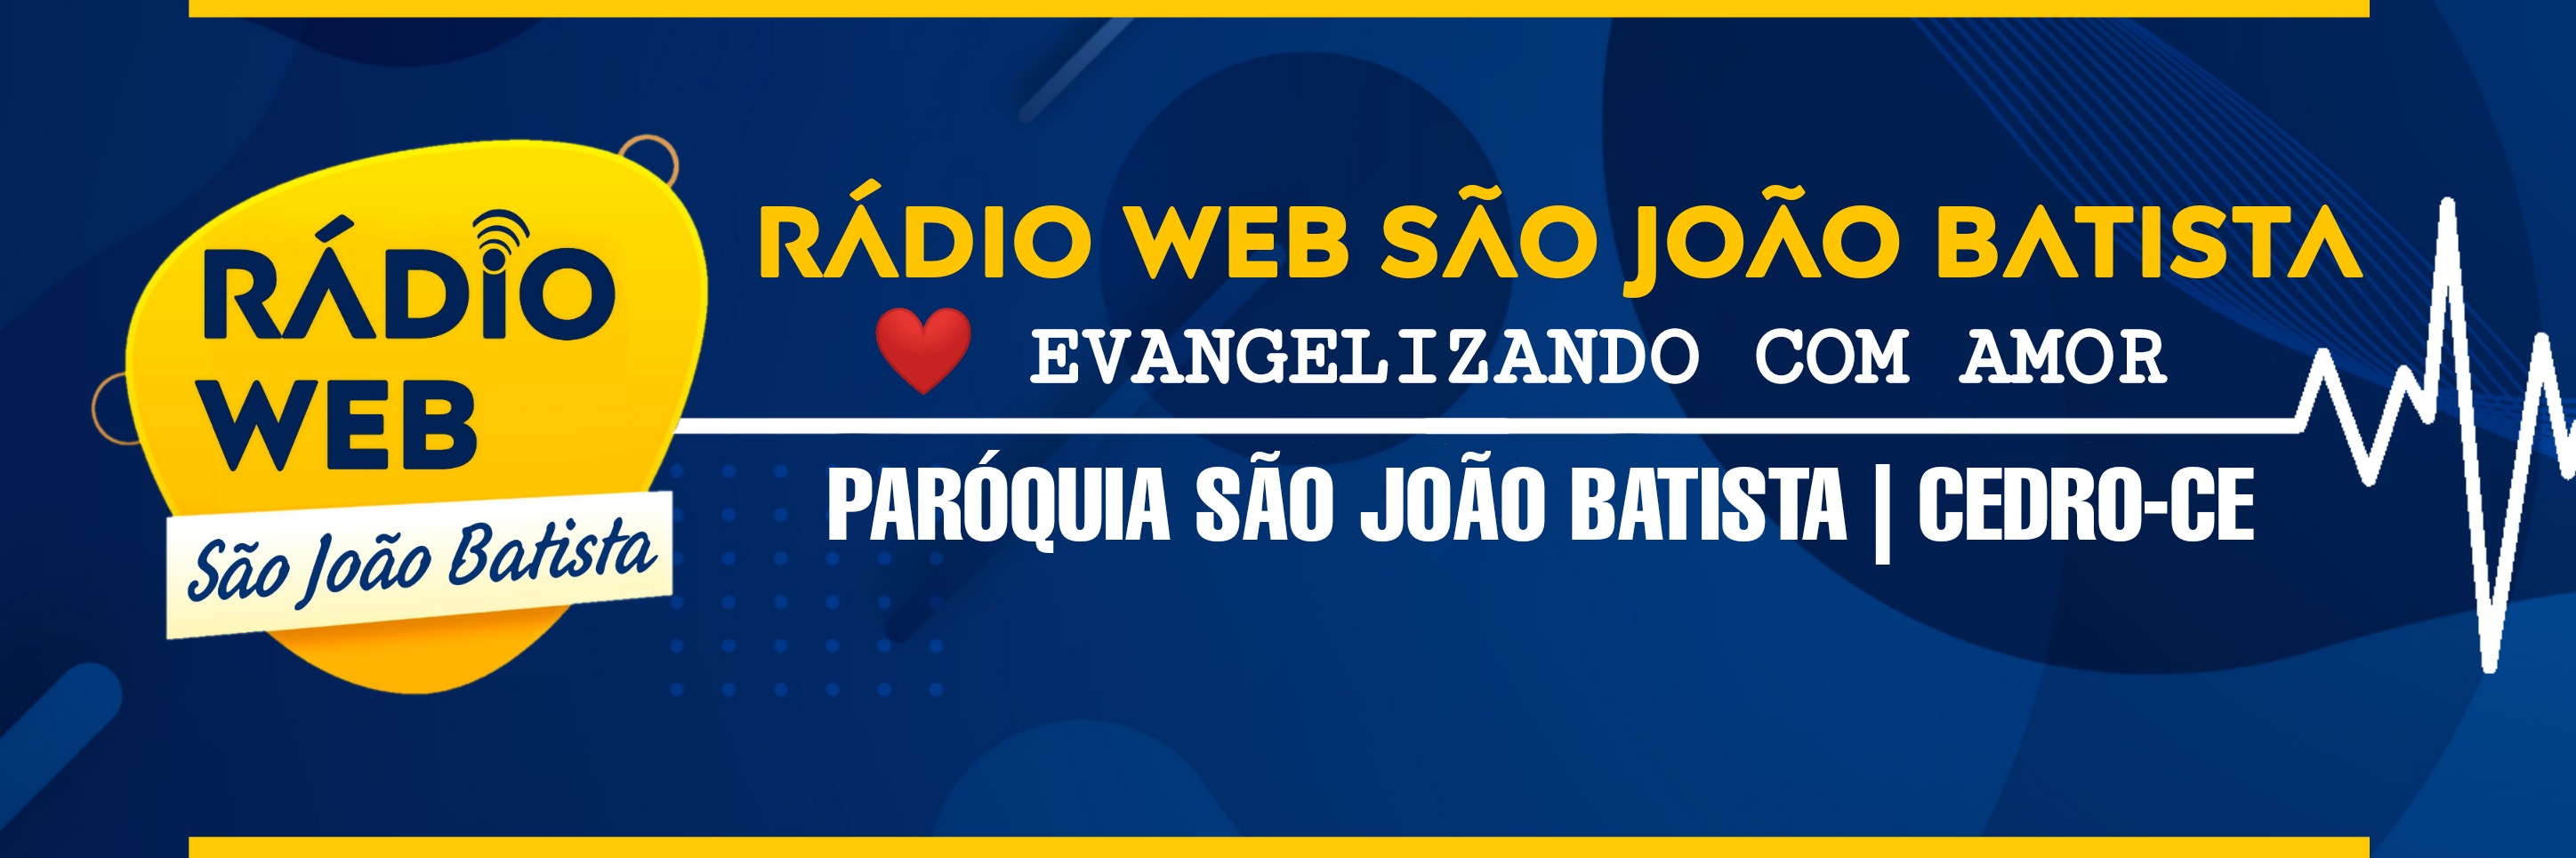 Rádio Web São João Batista - Evangelizando com Amor